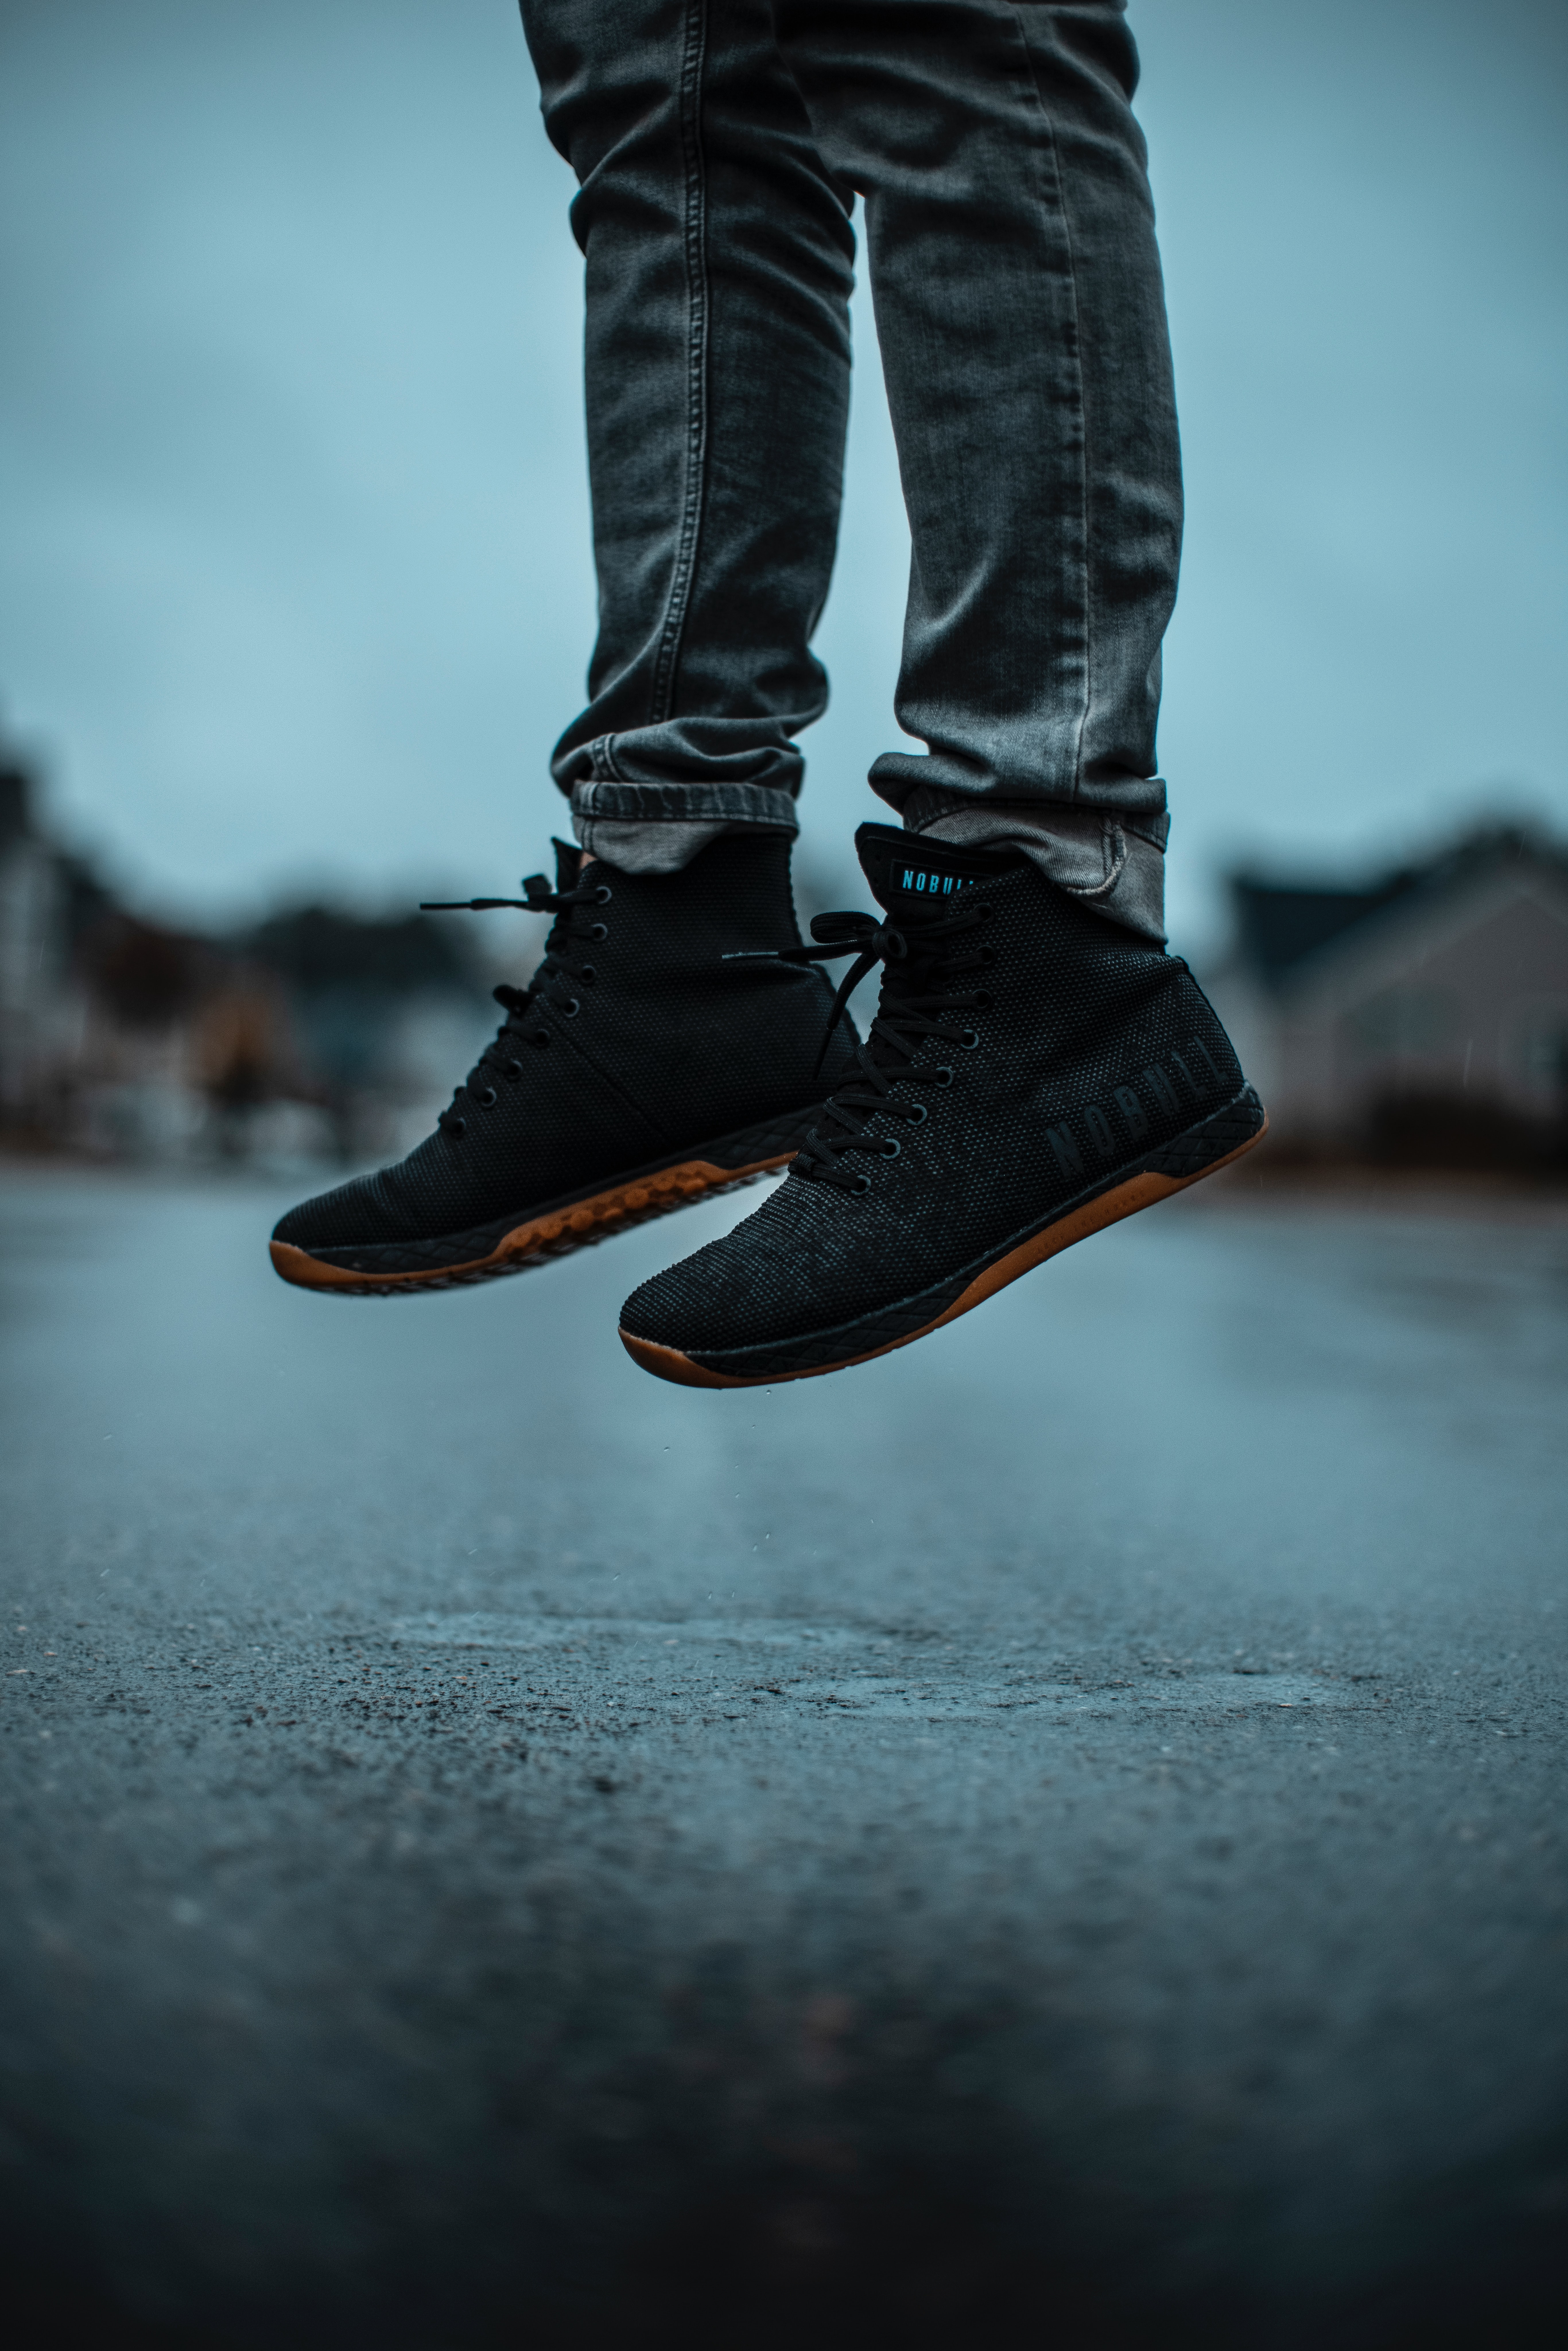 jeans, miscellanea, miscellaneous, legs, sneakers, asphalt High Definition image